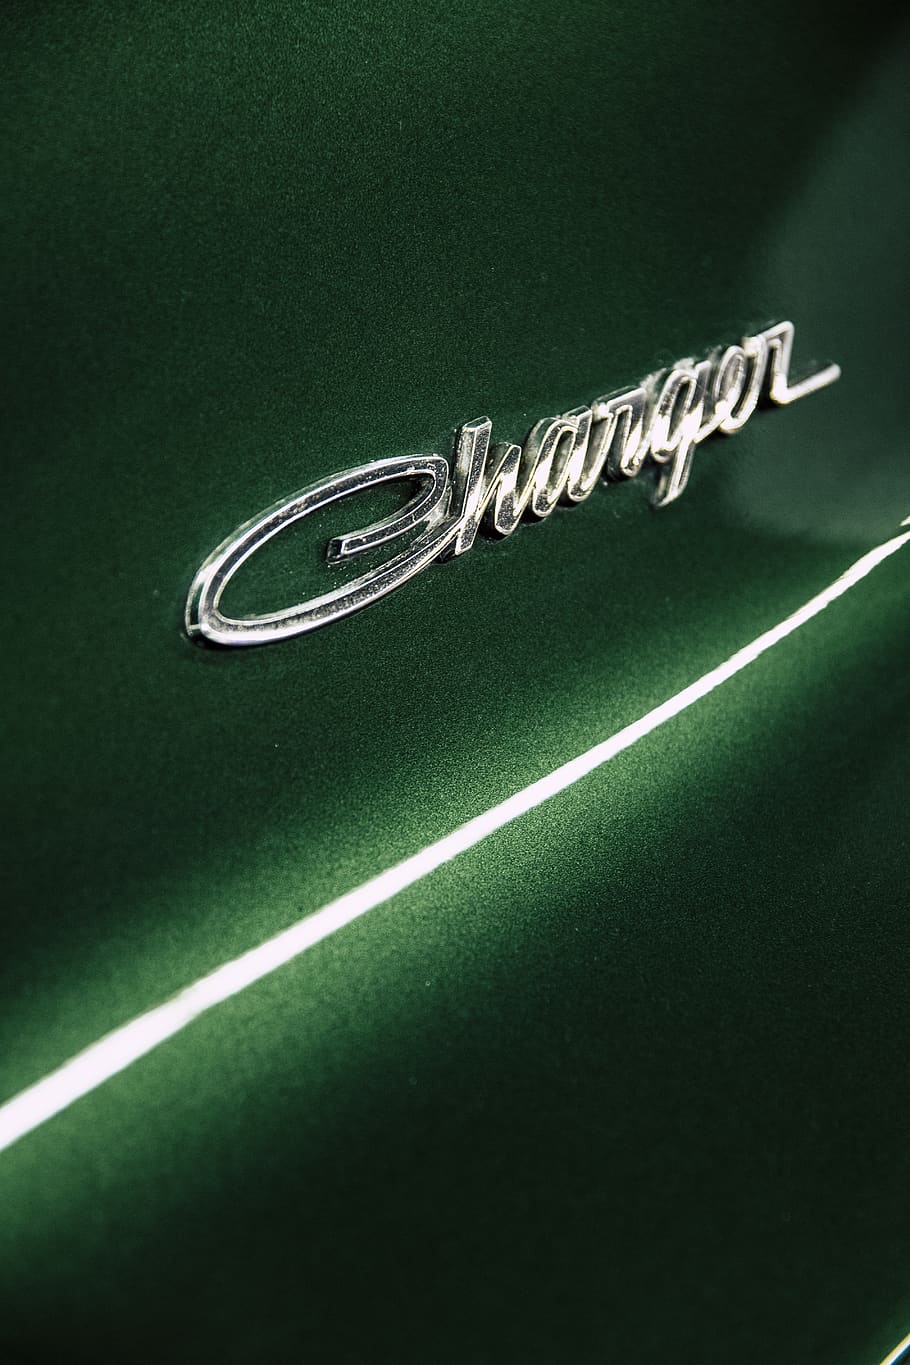 Dodge Charger Emblem, auto, automobile, automotive, brand, car